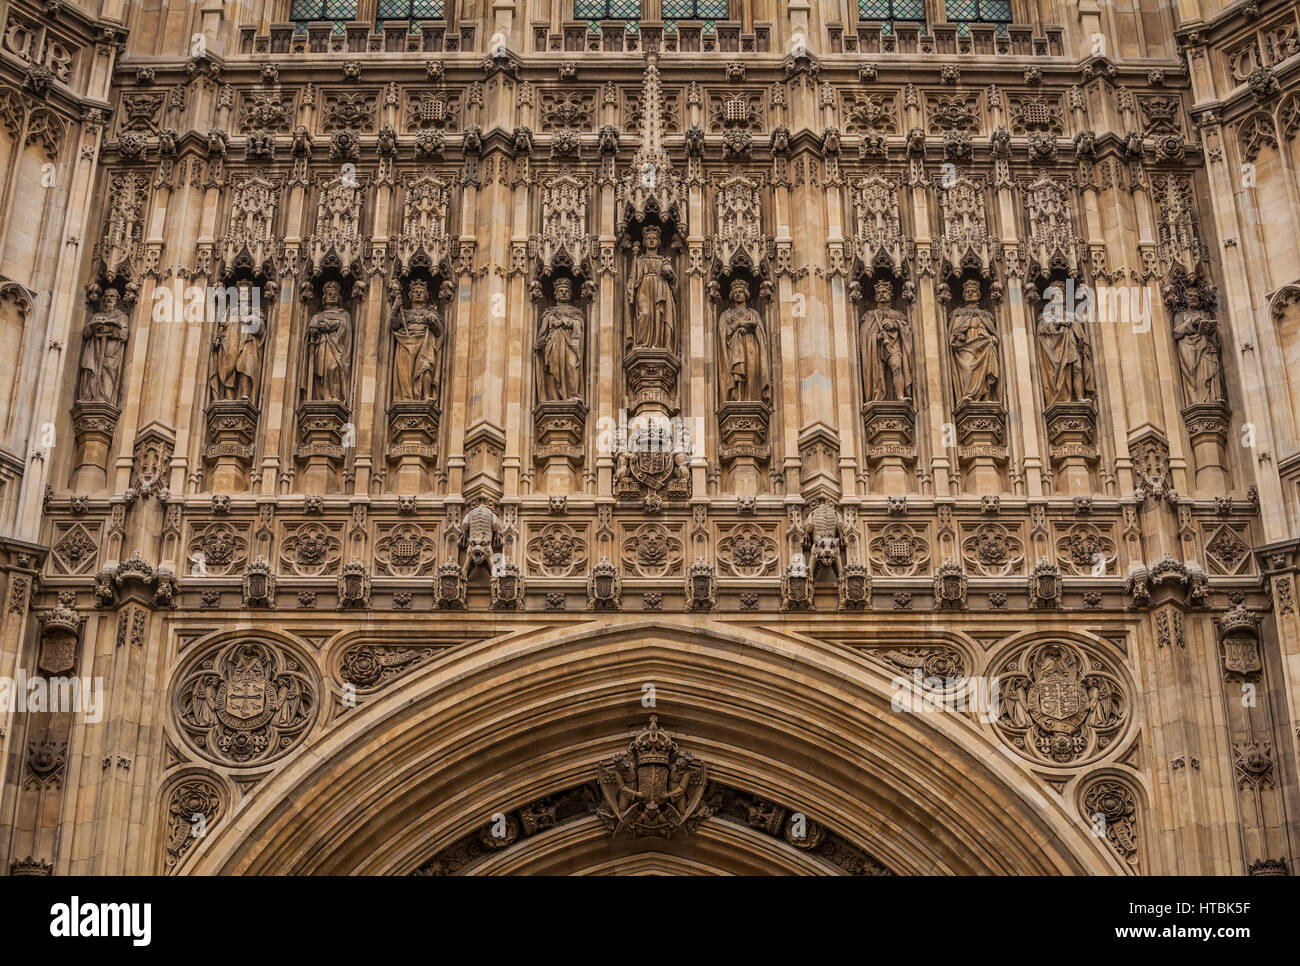 Une vue rapprochée des détails au-dessus de l'entrée principale de la Tour Victoria sur Westminster Palace, Londres, Angleterre, Royaume-Uni. Banque D'Images